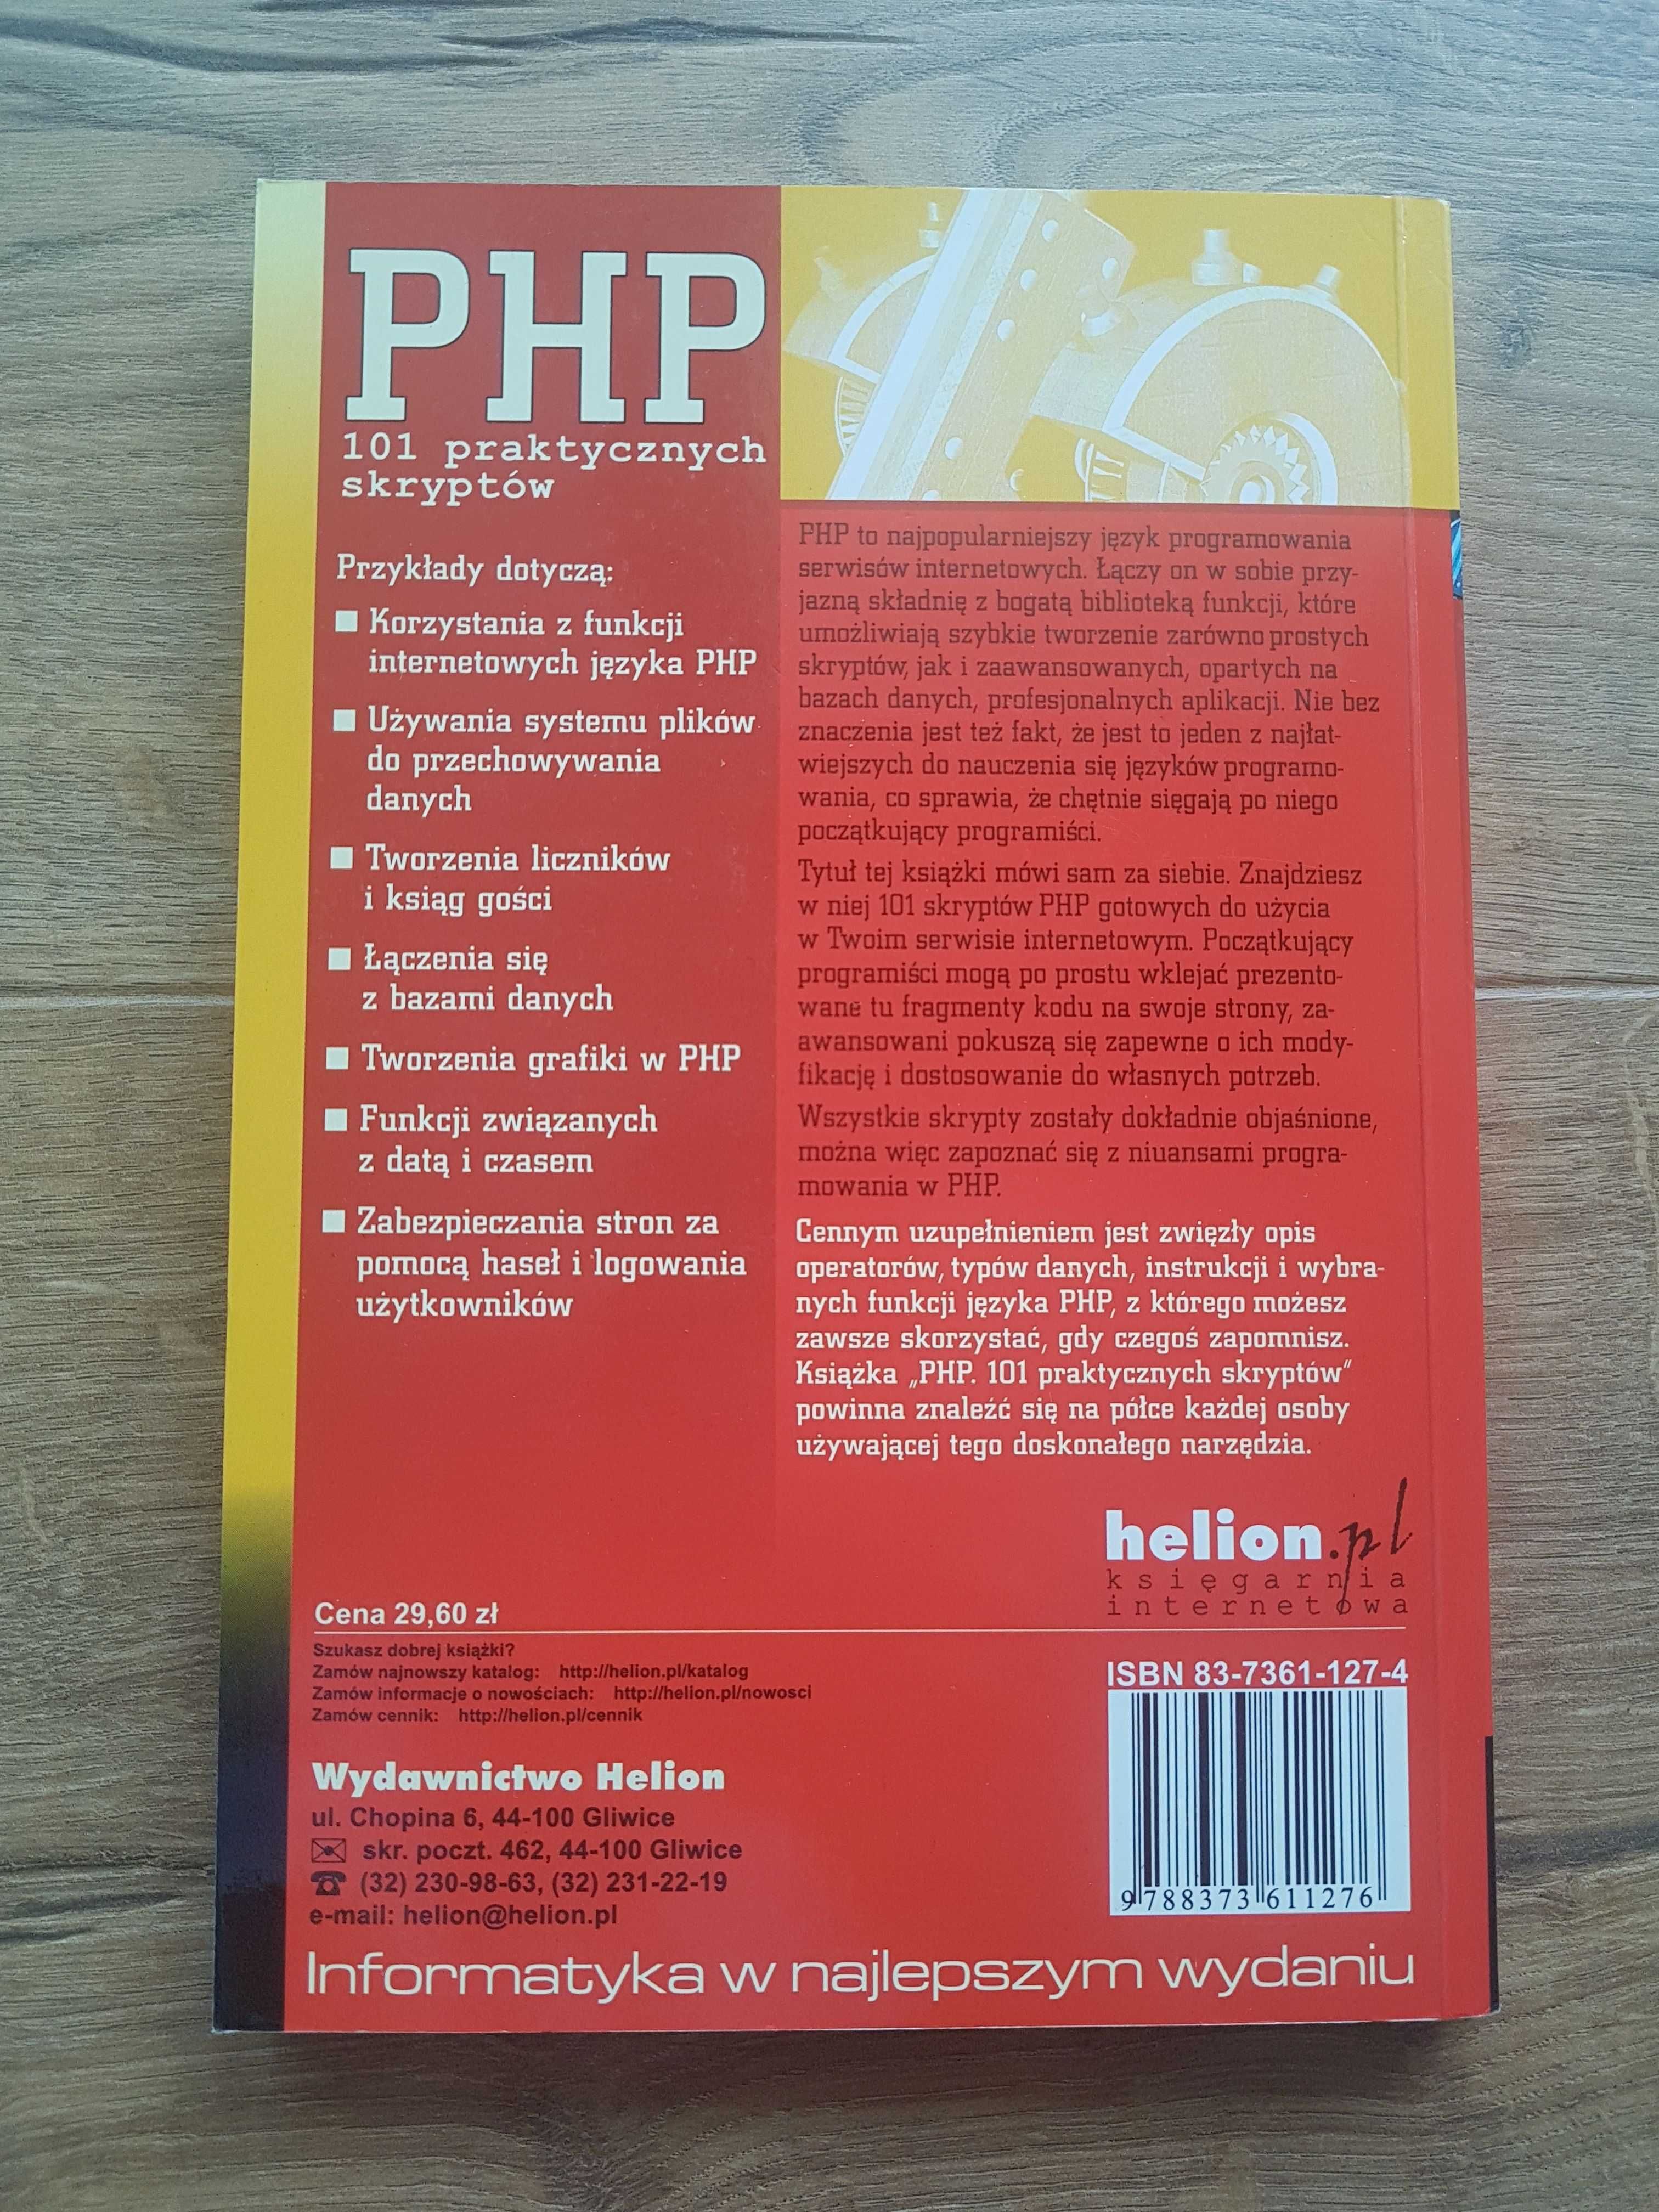 PHP. 101 praktycznych skryptów. Marcin Lis